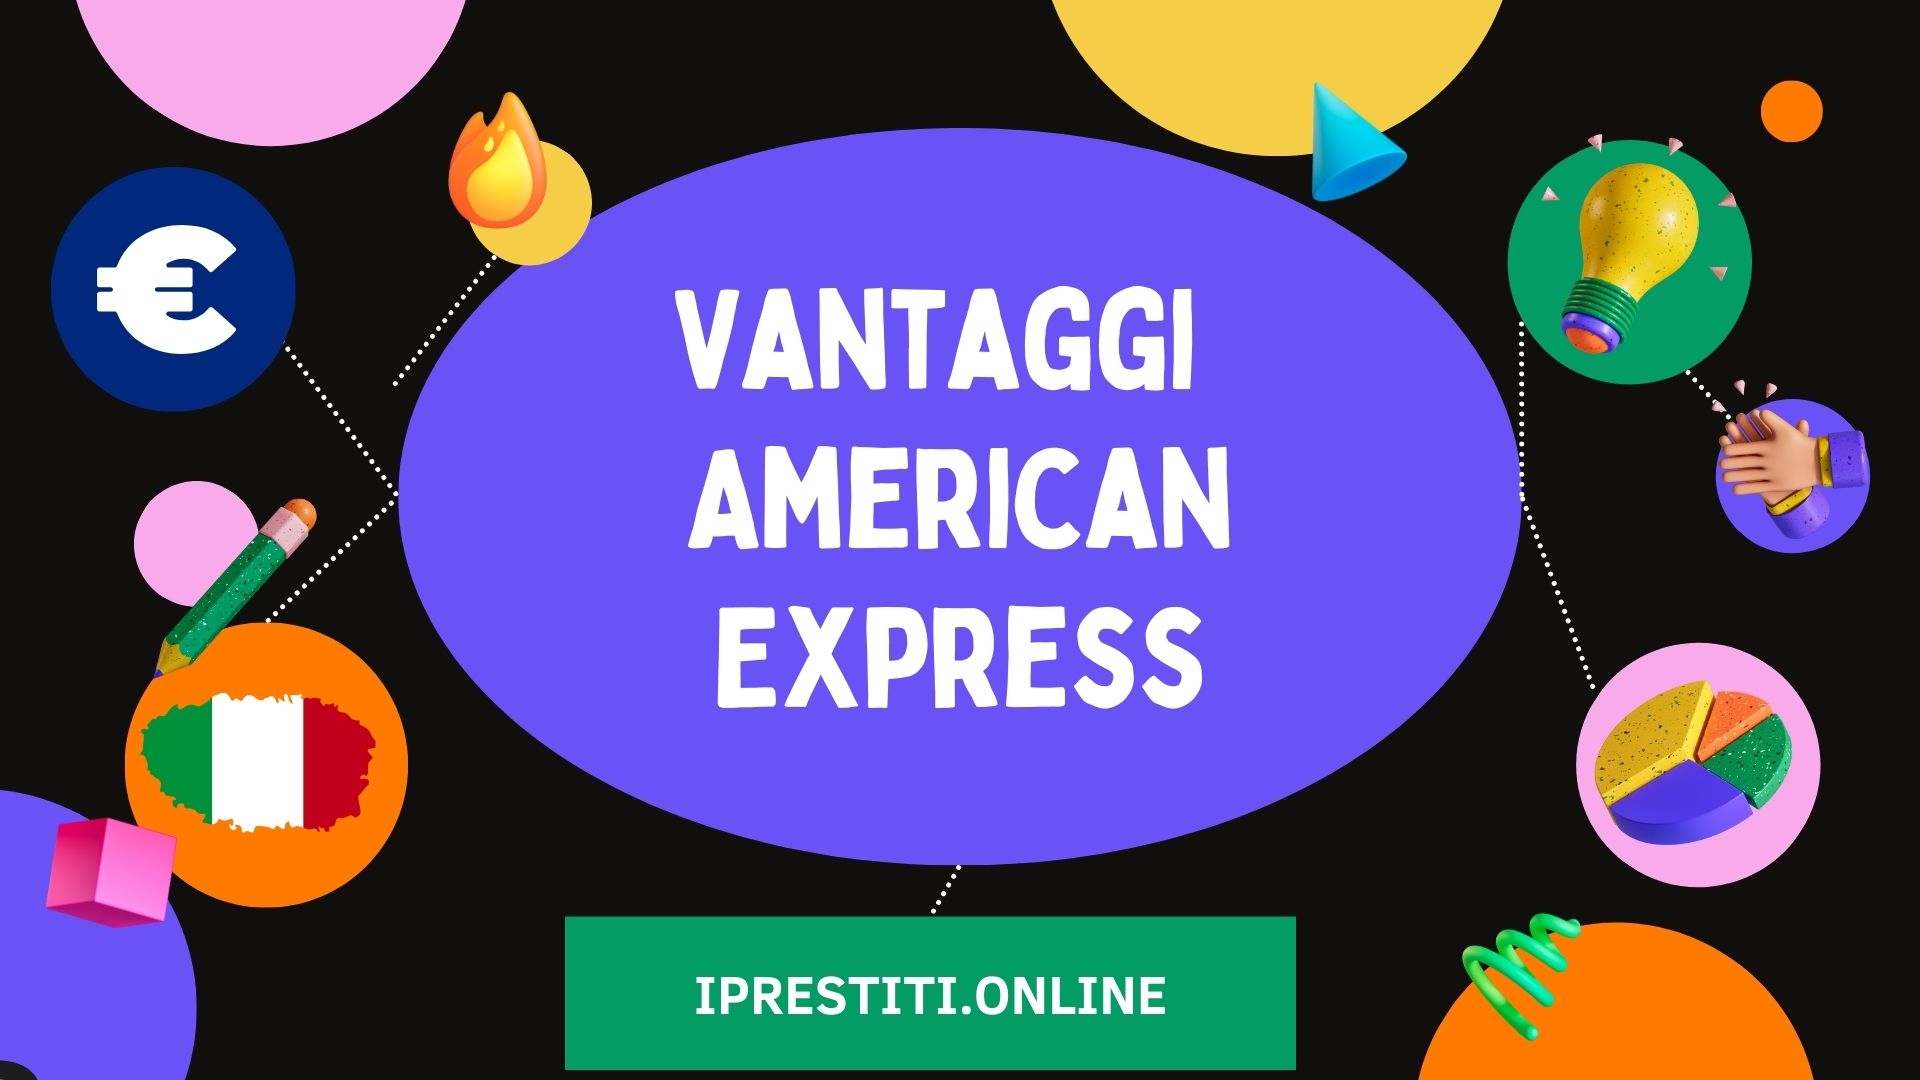 Vantaggi American Express